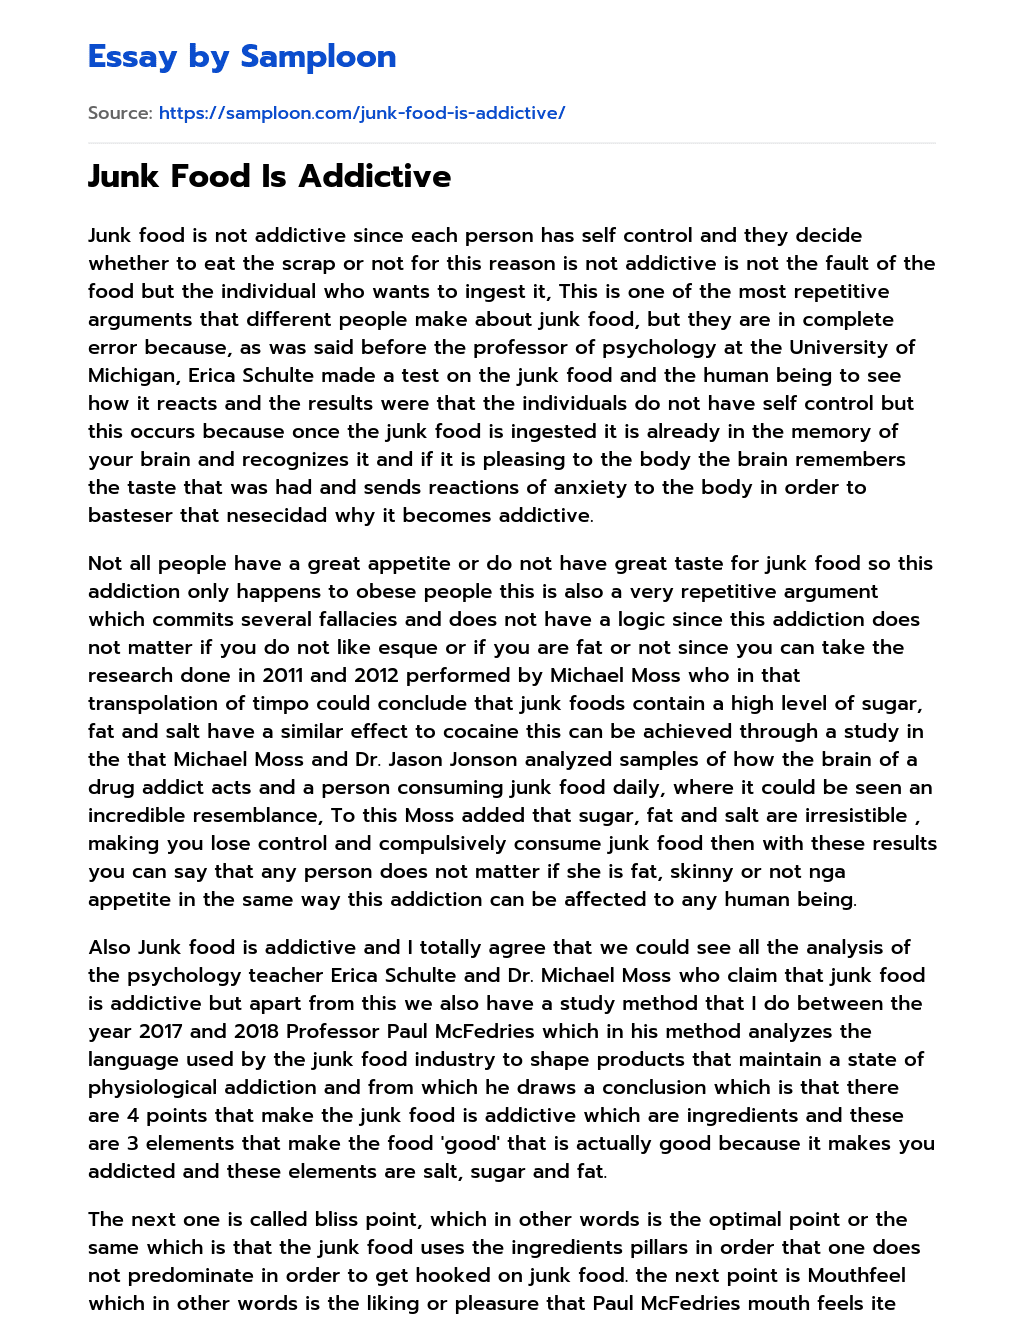 Junk Food Is Addictive Summary essay